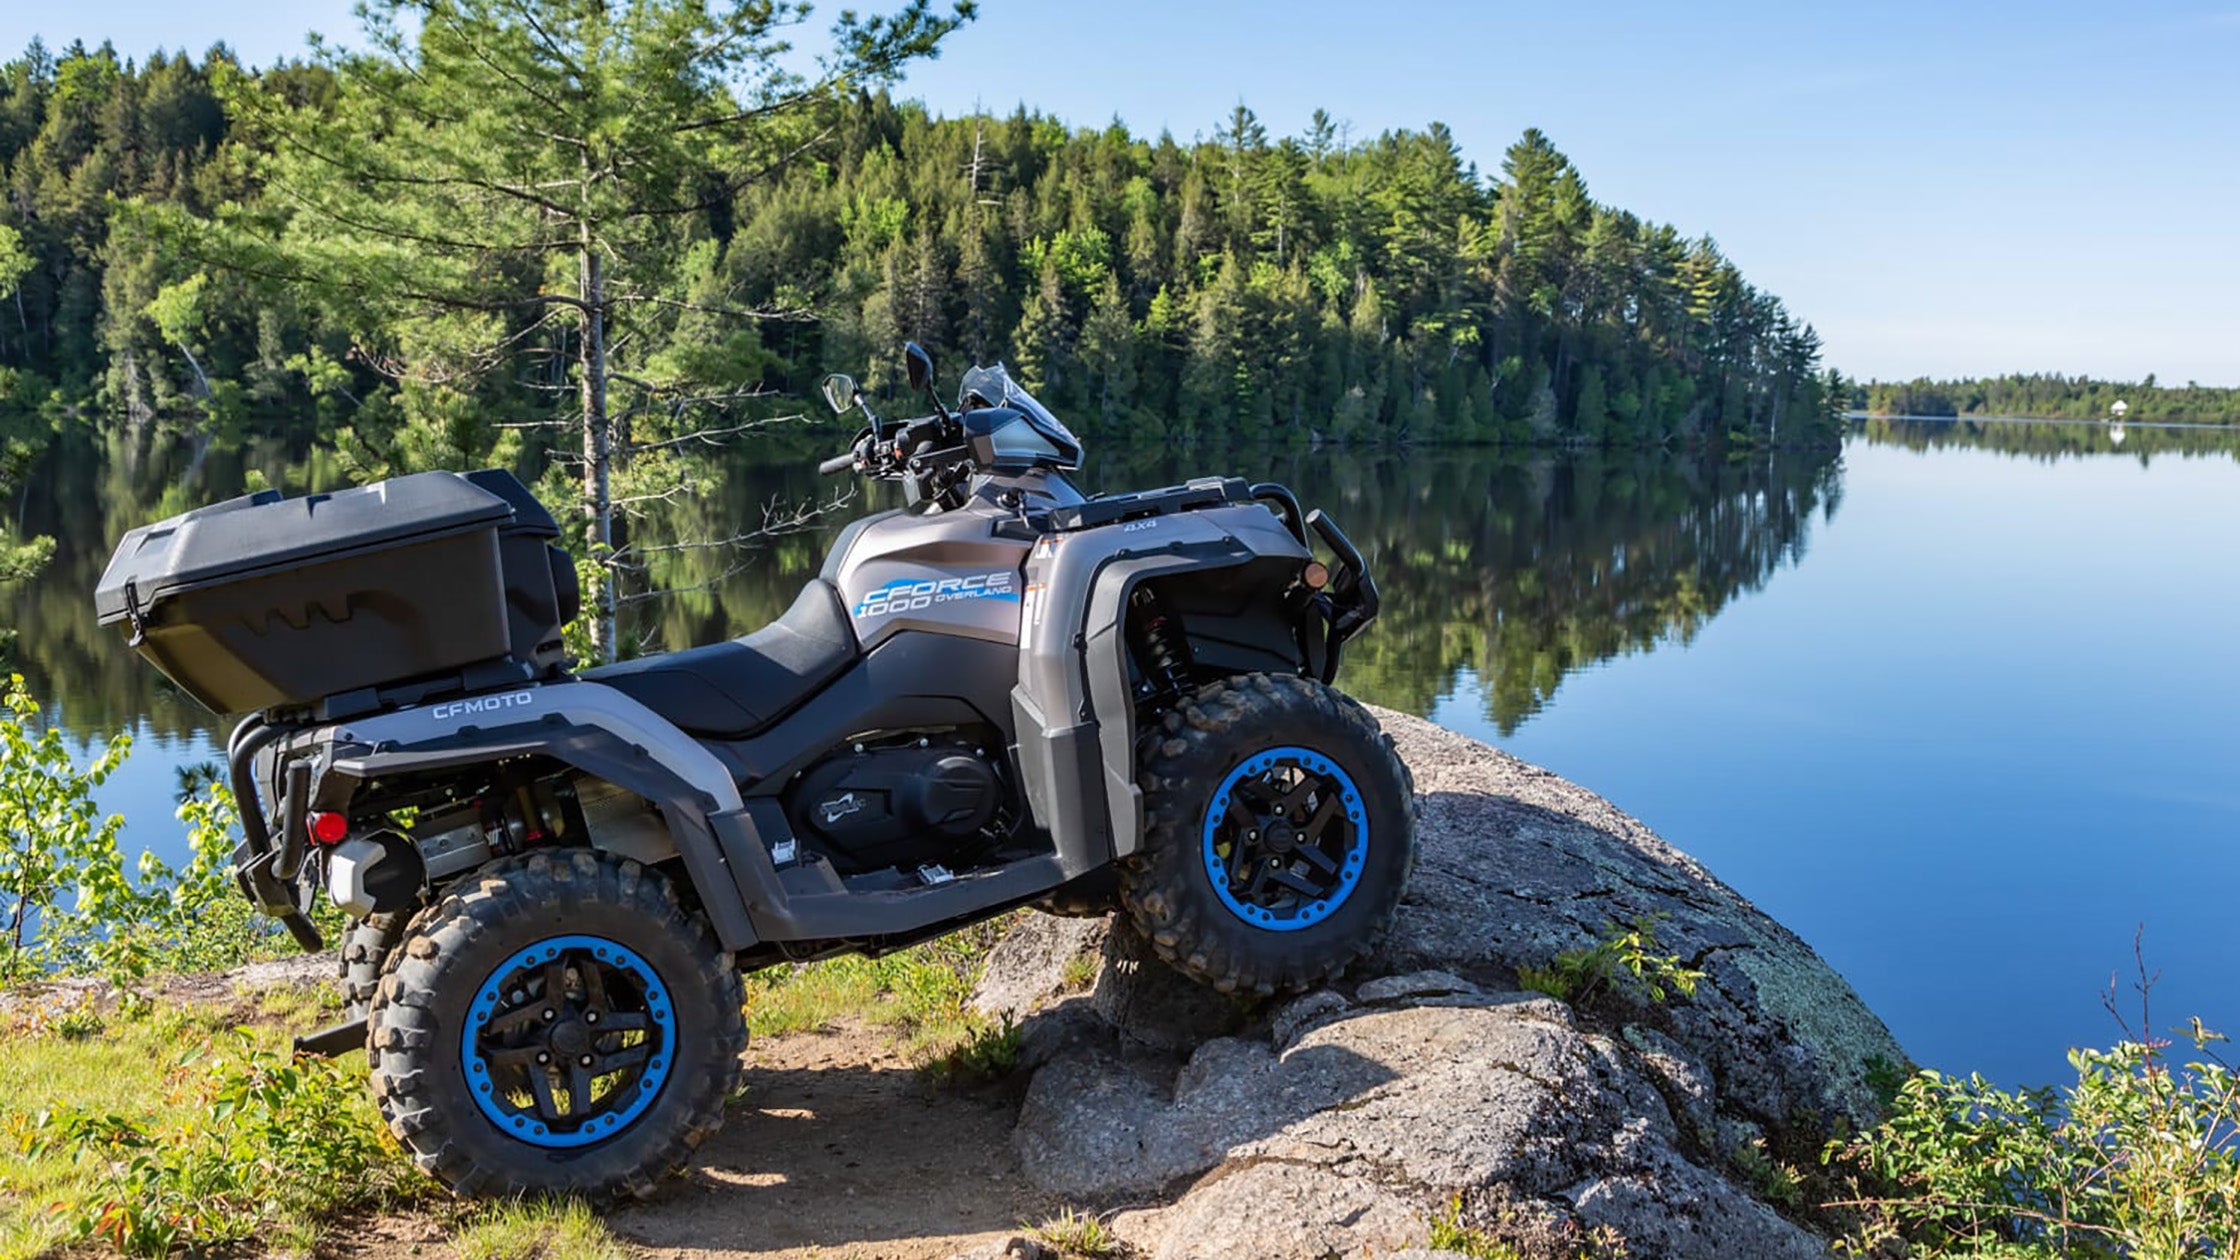 CFMoto CForce Overland (ATV) avec un kit de levage PERFEX Industries, garé au bord d'un lac serein, mettant en valeur les capacités améliorées d'exploration en plein air du véhicule et la connexion paisible avec la nature.